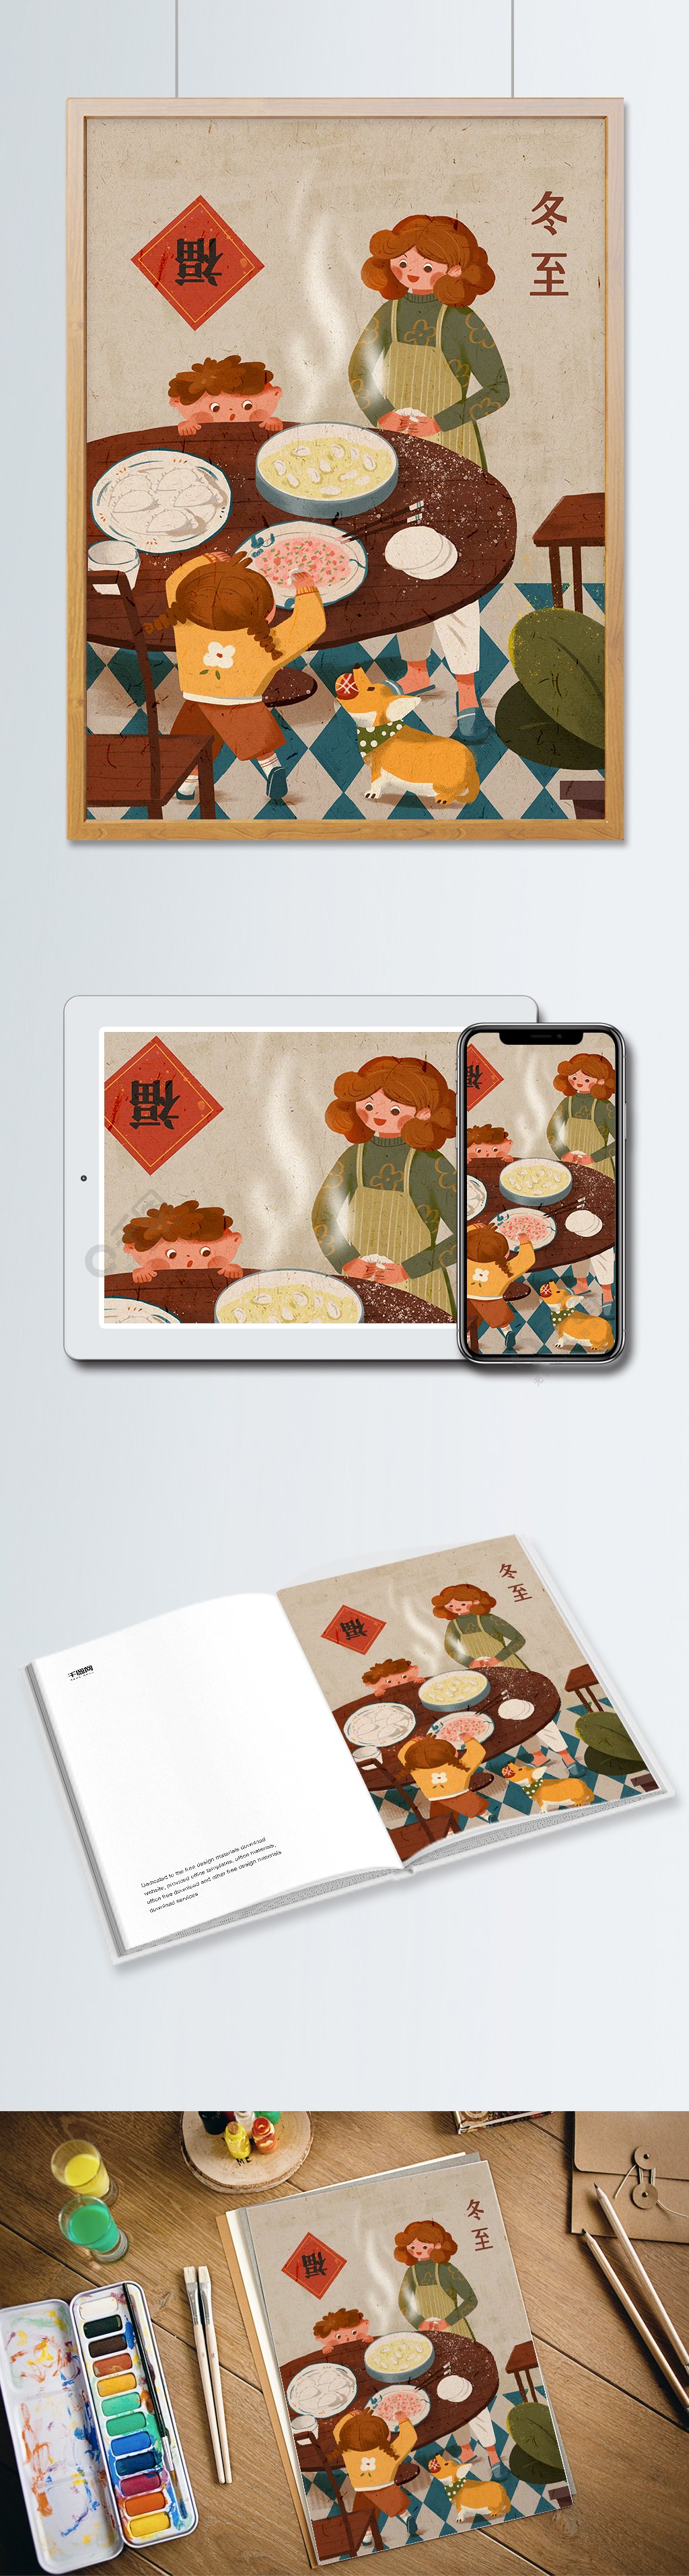 冬至二十四节气温馨家庭包饺子创意插画2年前发布